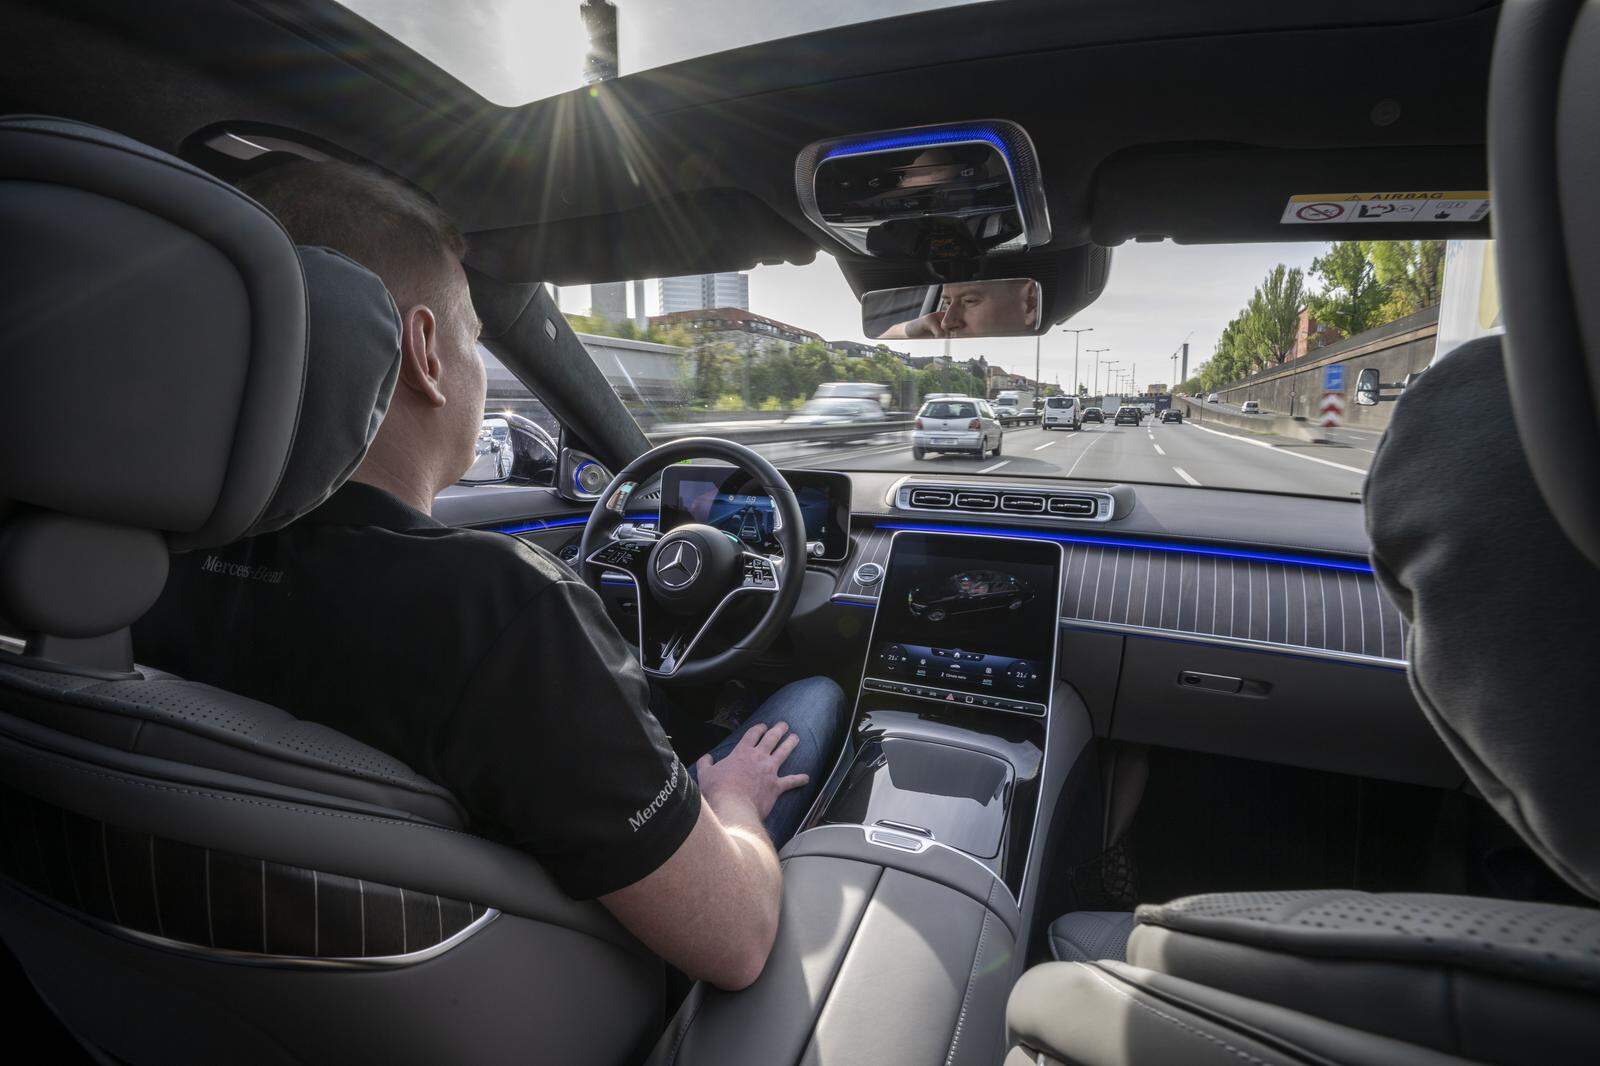 Ist die Mercedes S-Klasse autonom unterwegs, darf der Mensch die Hände dauerhaft vom Steuer nehmen